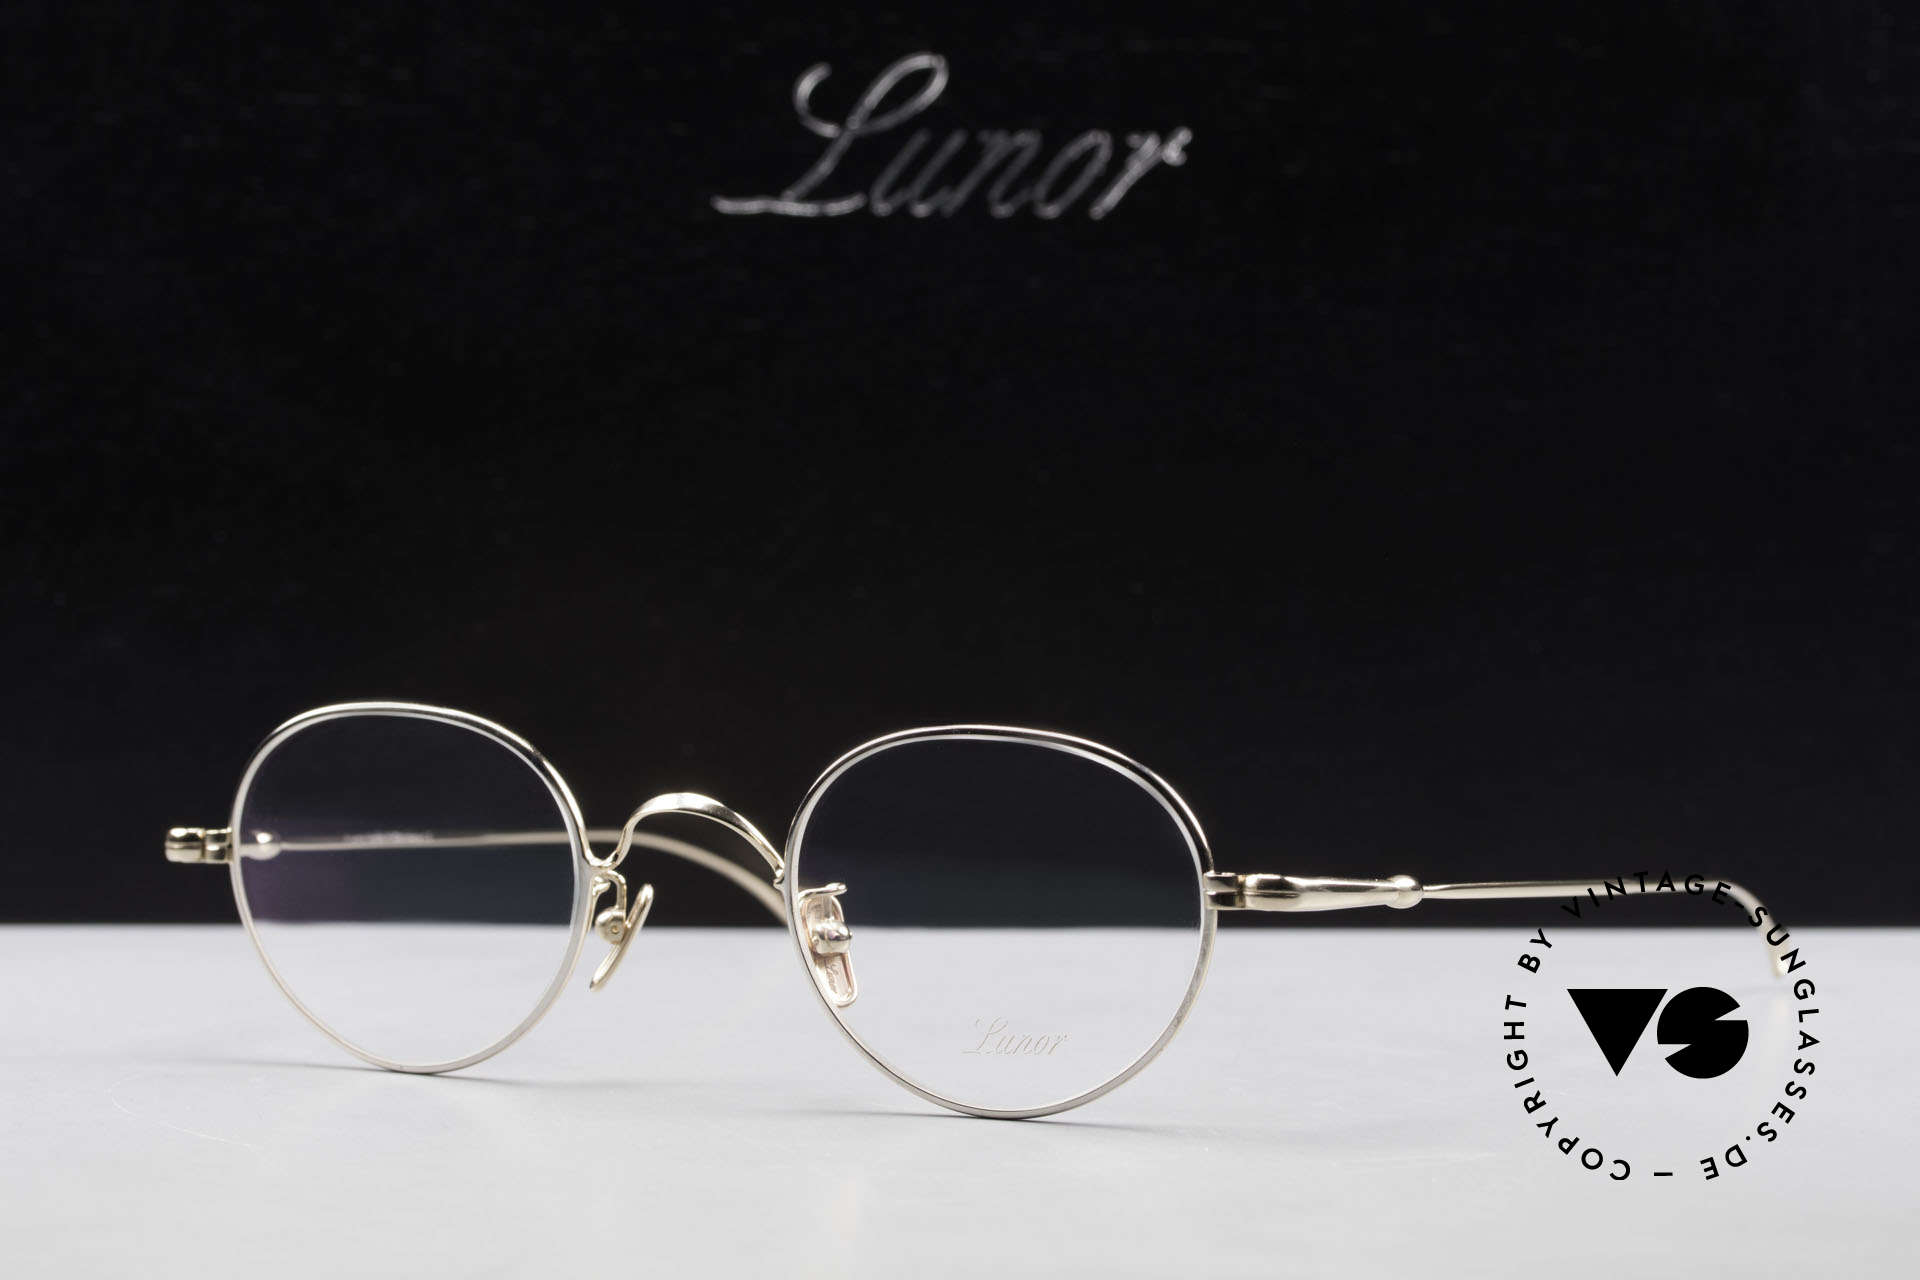 Lunor V 108 Bicolor Eyeglasses Titanium, Size: medium, Made for Men